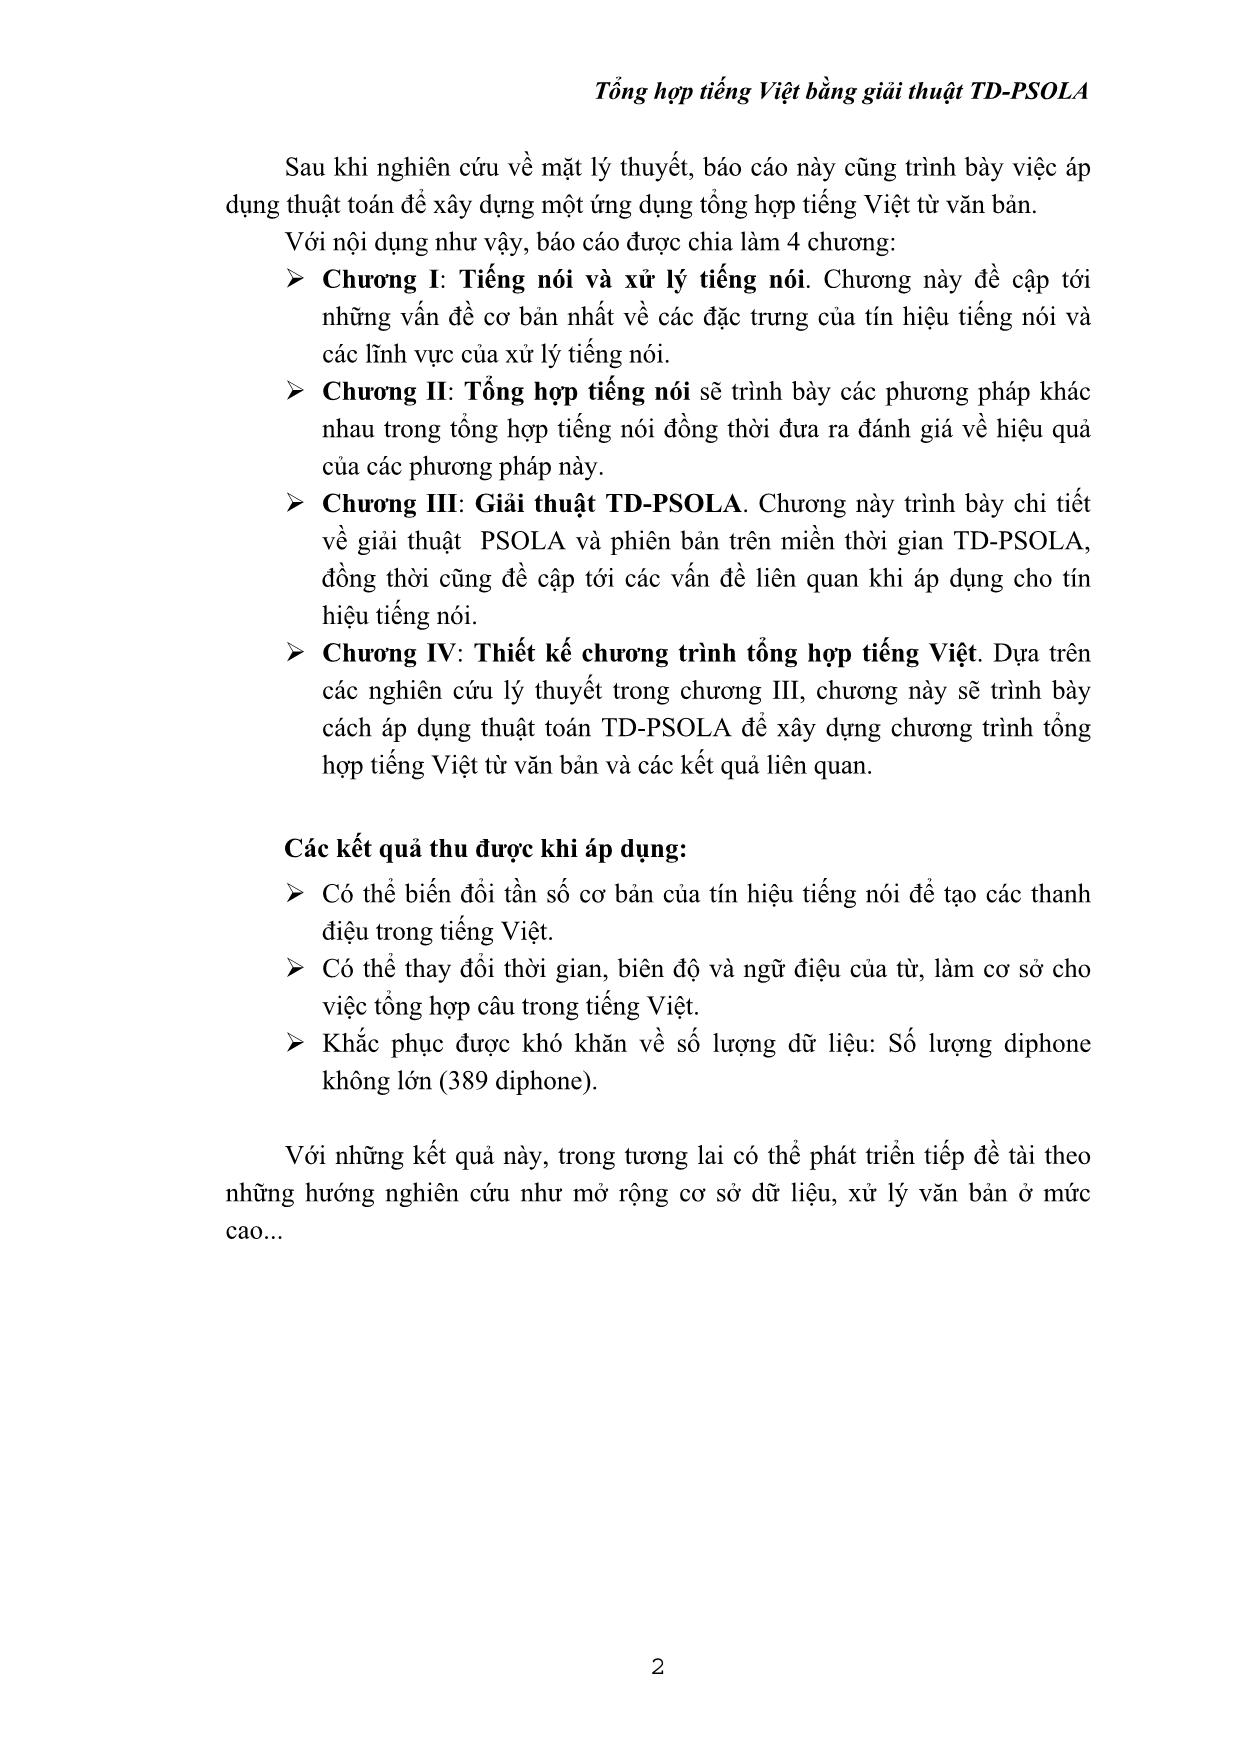 Luận văn Tổng hợp tiếng Việt bằng giải thuật TD-PSOLA trang 2